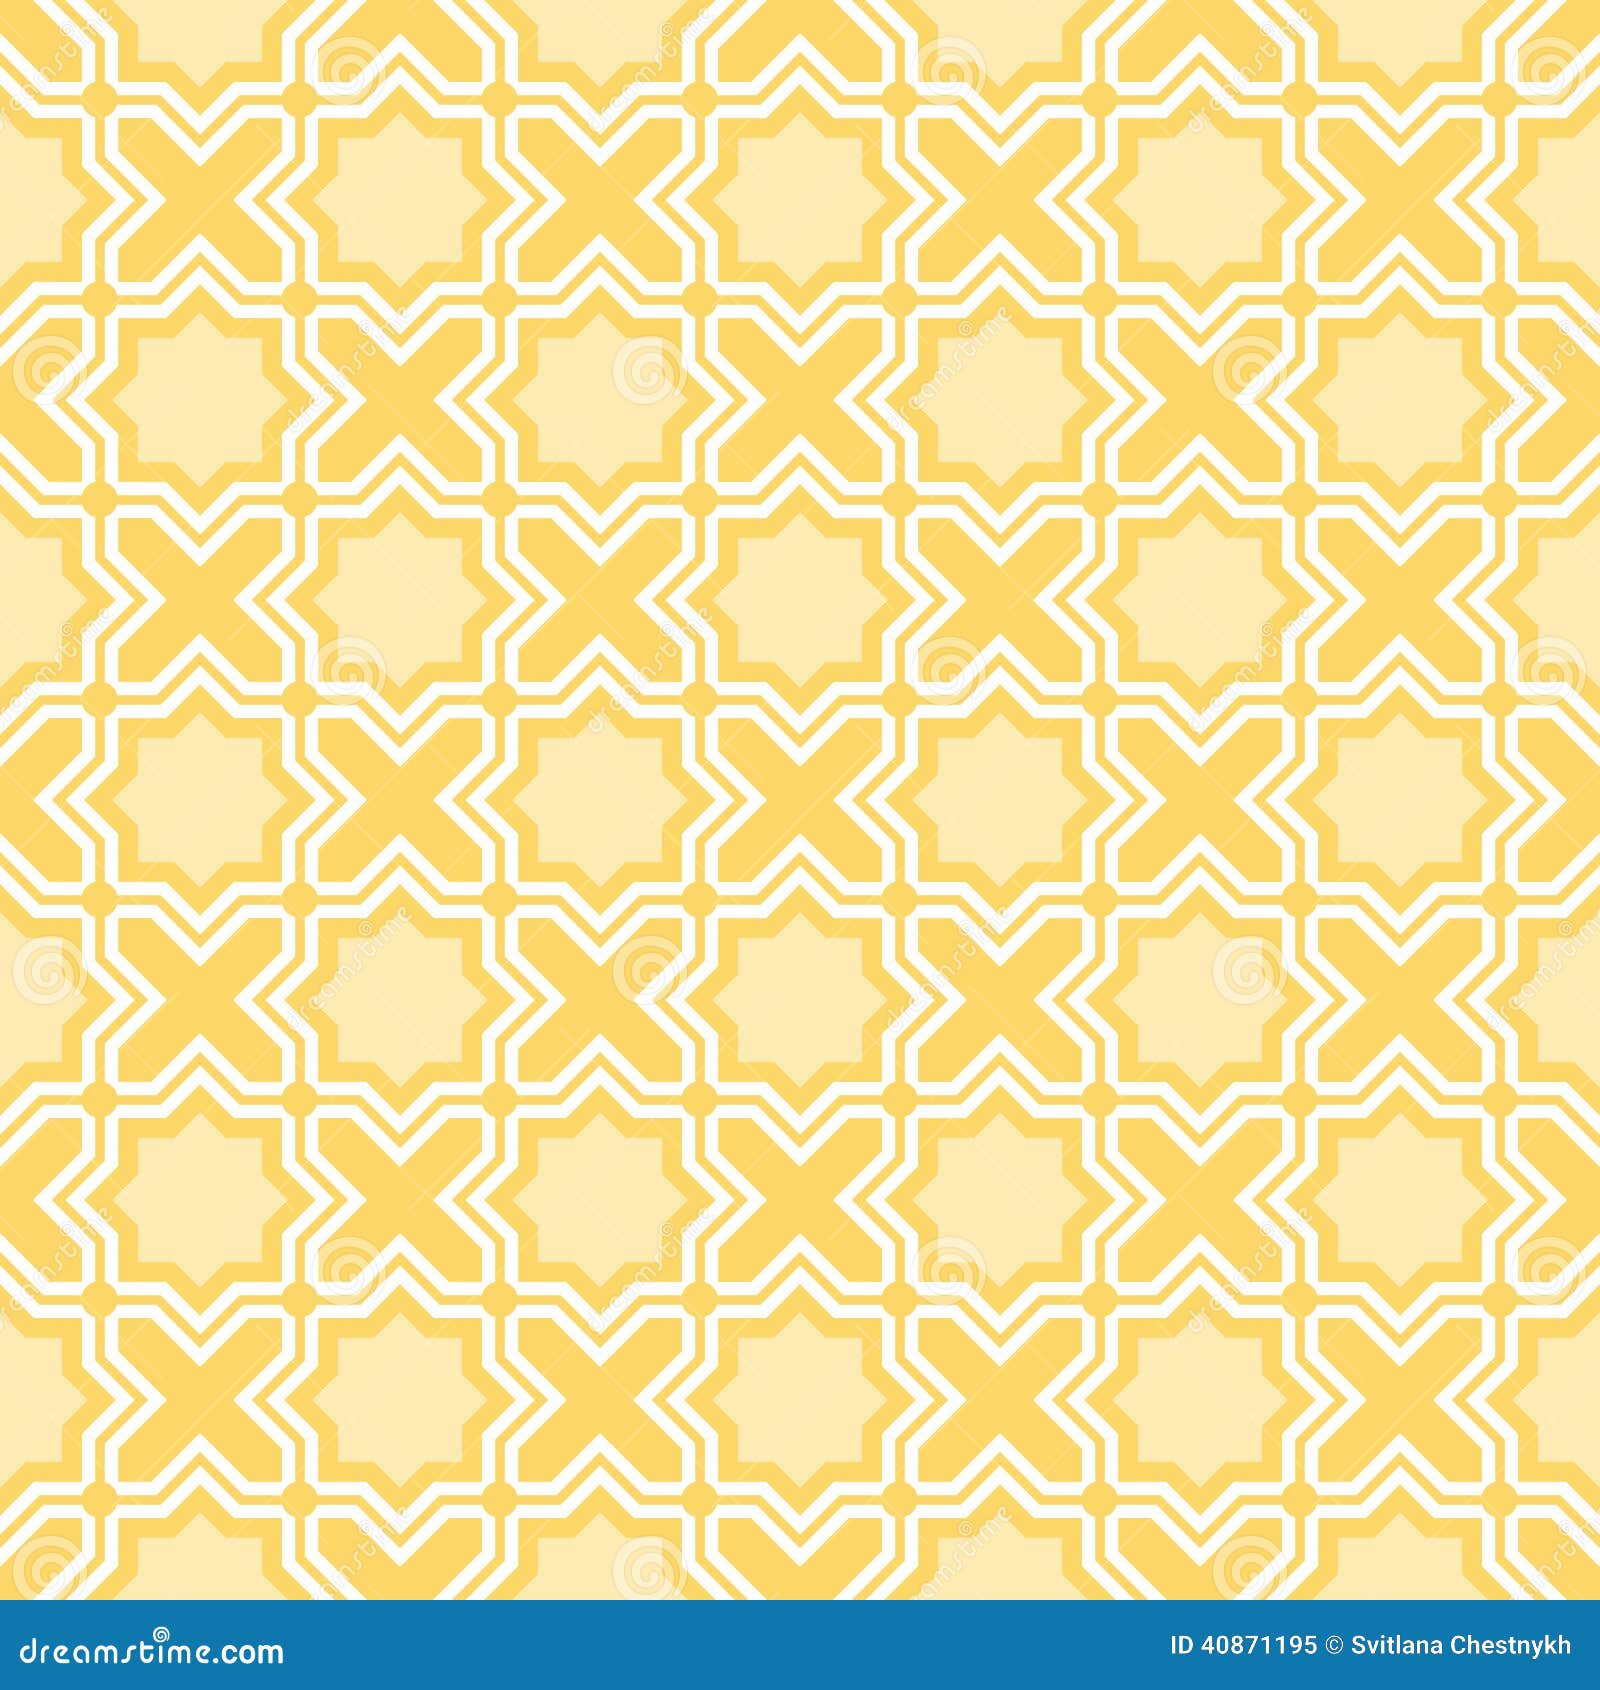 quatrefoil lattice pattern